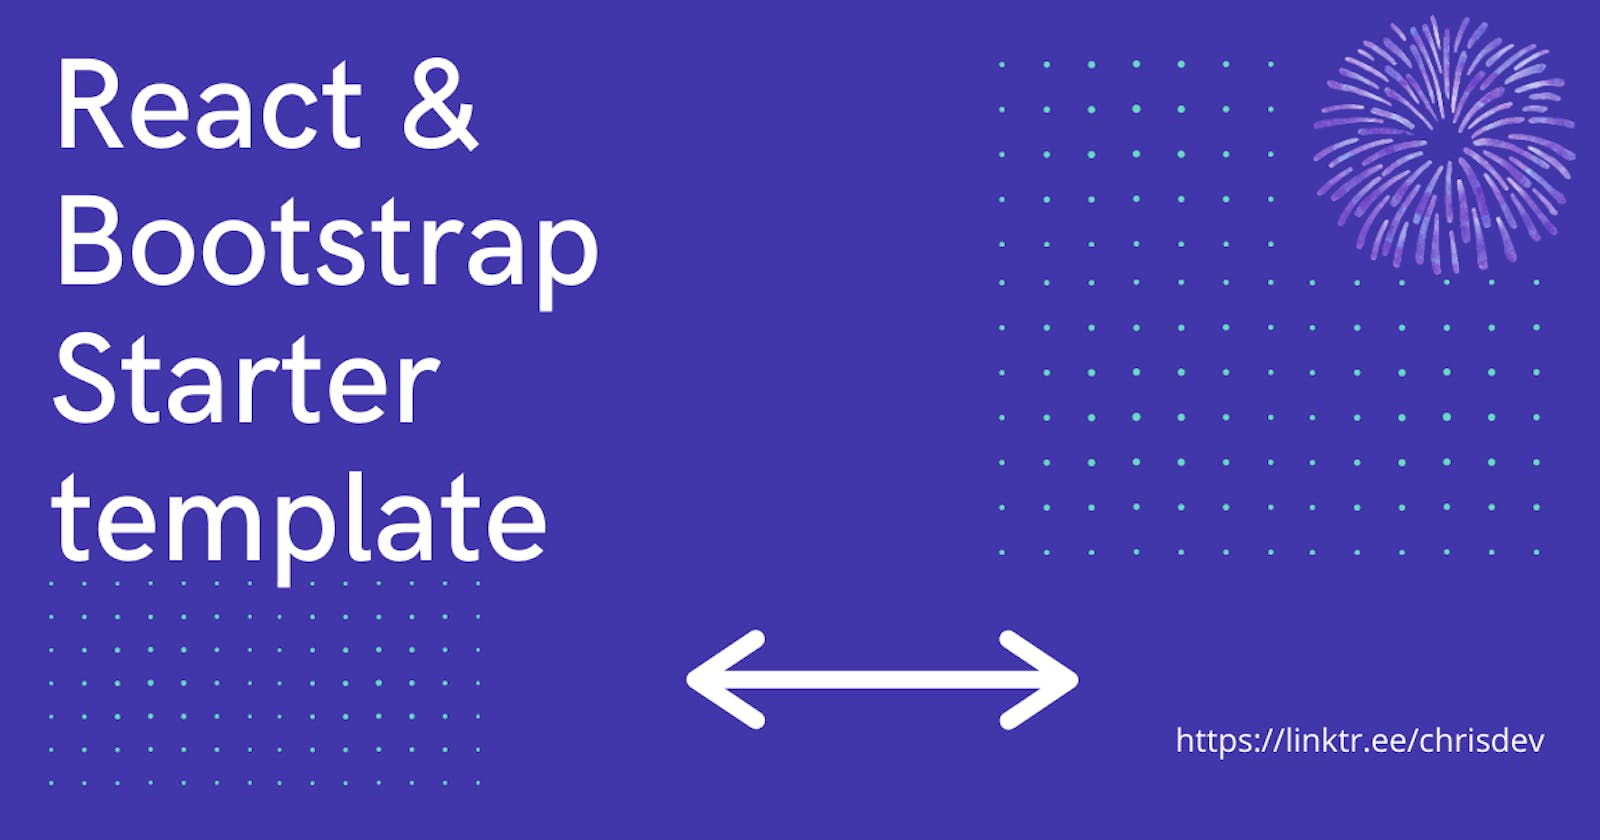 React & Bootstrap Starter Template